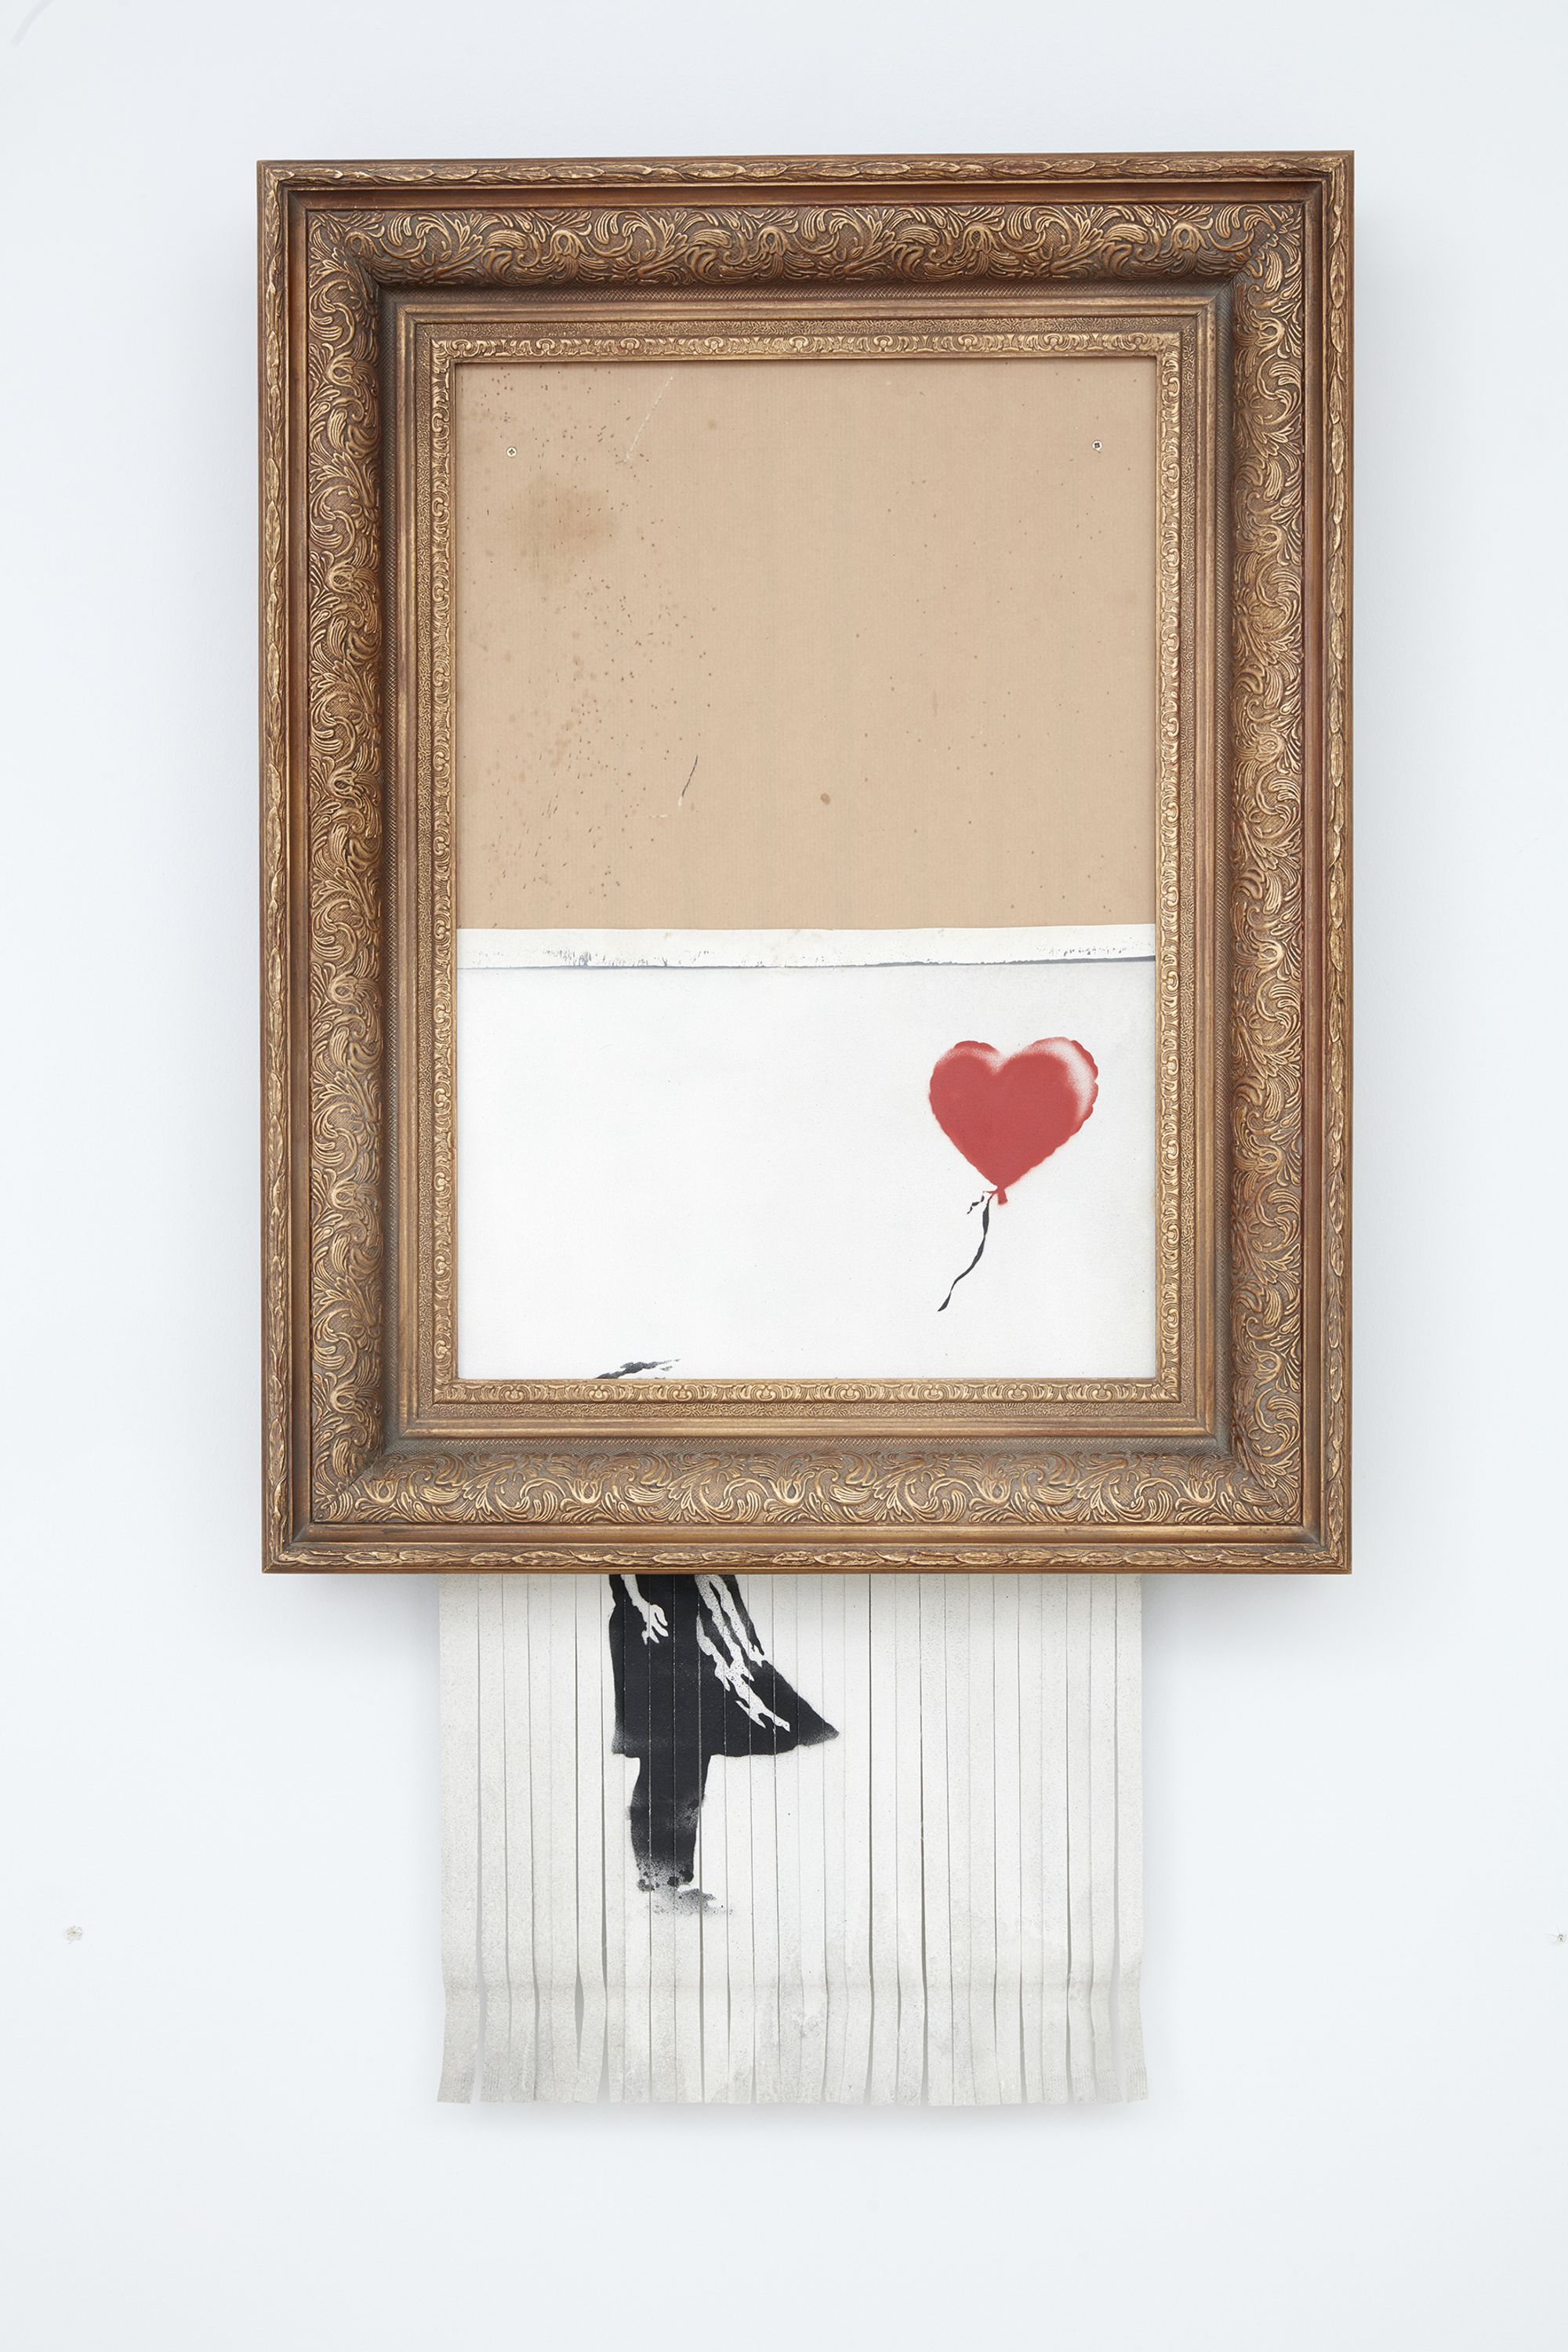 01 Banksy love is in the bin sothebys sale 2021